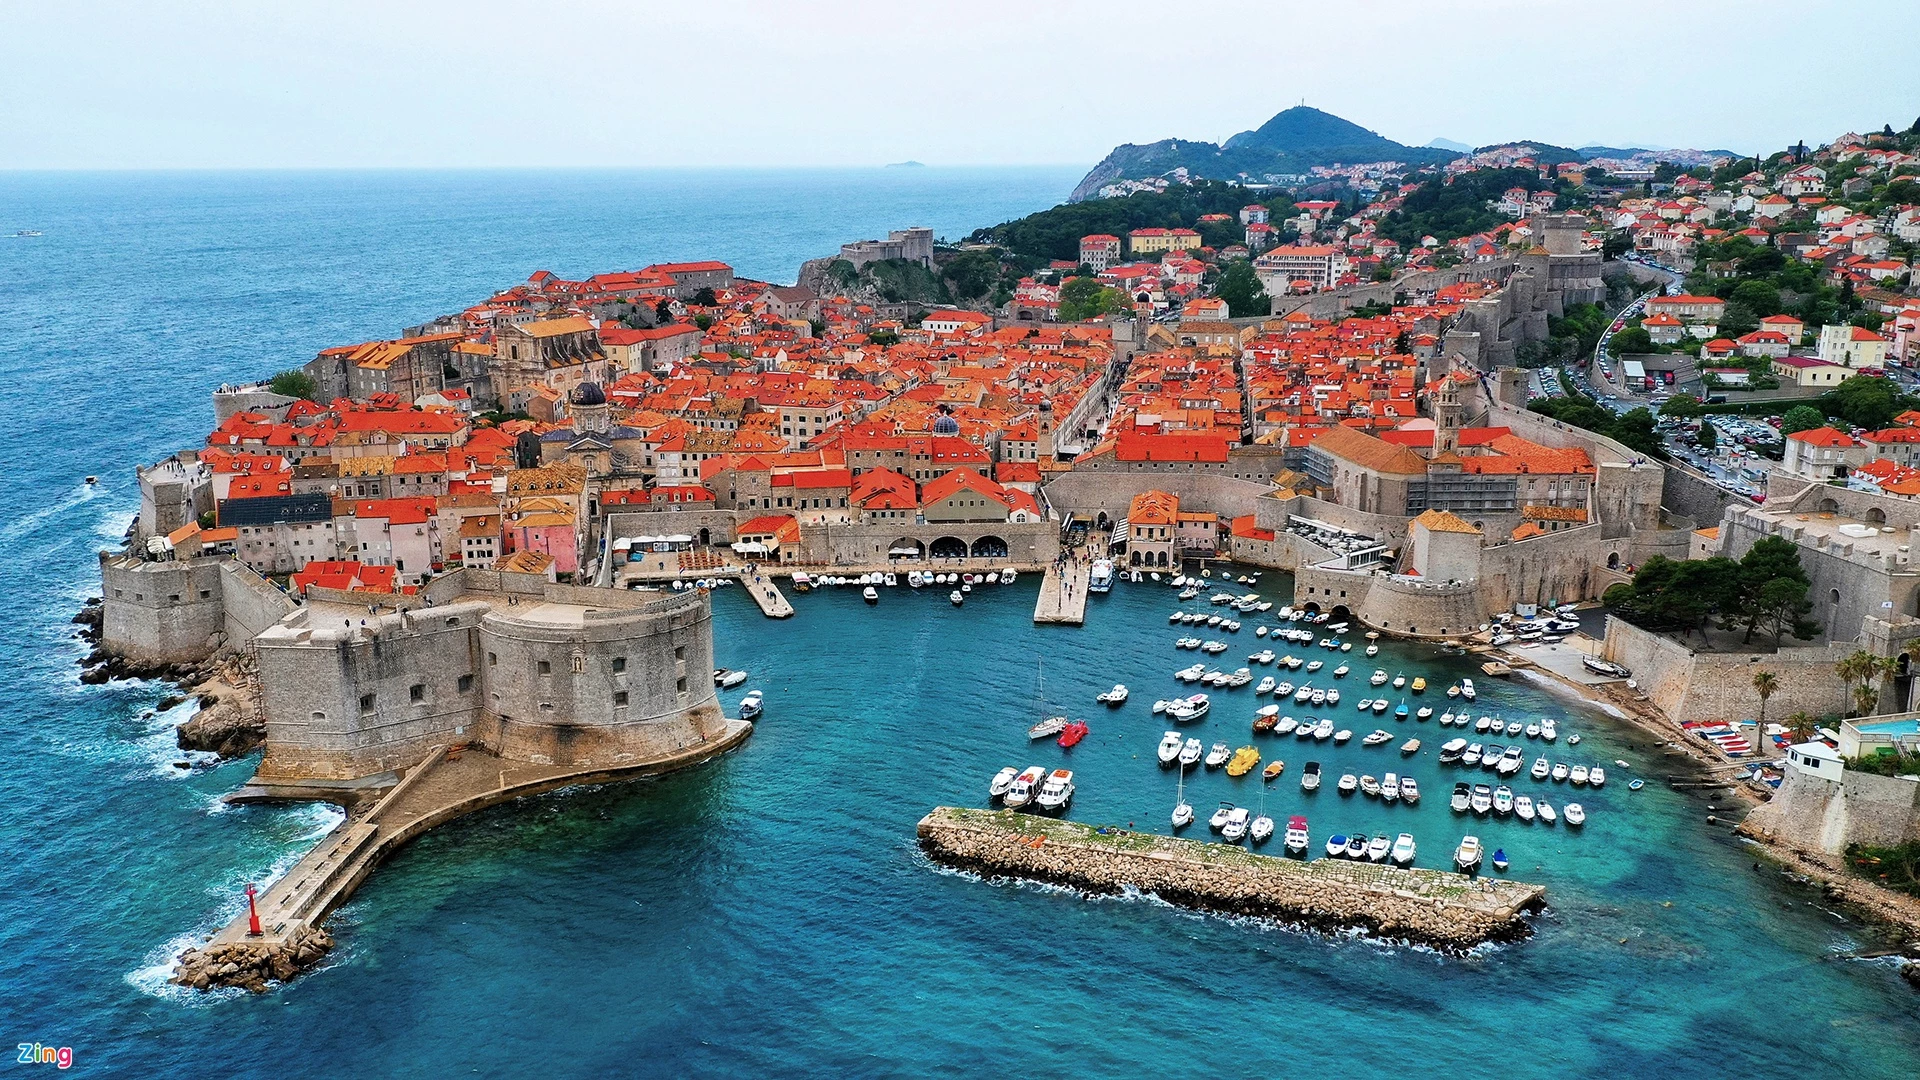 Tháng 4 dạo quanh phố cổ Dubrovnik. Nằm ở phía nam Croatia, bên bờ biển Baltic, phố cổ Dubrovnik phát triển rất mạnh vào thế kỷ 15-16. Thành phố này được mệnh danh là “Hòn ngọc của vùng biển Baltic” với vẻ đẹp lộng lẫy của những bức tường trắng, những mái ngói đỏ cùng biển xanh và khu cảng cổ. Nét đẹp cổ kính của Dubrovnik là yếu tố quan trọng giúp thành phố có tên trong danh sách Di sản văn hóa thế giới năm 1979. Tại đây, các cửa hàng trên mặt đường xây theo lối kiến trúc kiểu Baroque. Một bên là tường thành cổ, một bên là cảng tàu hiện đại hoạt động nhộn nhịp cả ngày, là bến đỗ của hàng trăm chiếc du thuyền lớn nhỏ. Gần đó, các con tàu lớn đưa khách tham quan Địa Trung Hải liên tục cập bờ giúp khách quốc tế lên xuống.